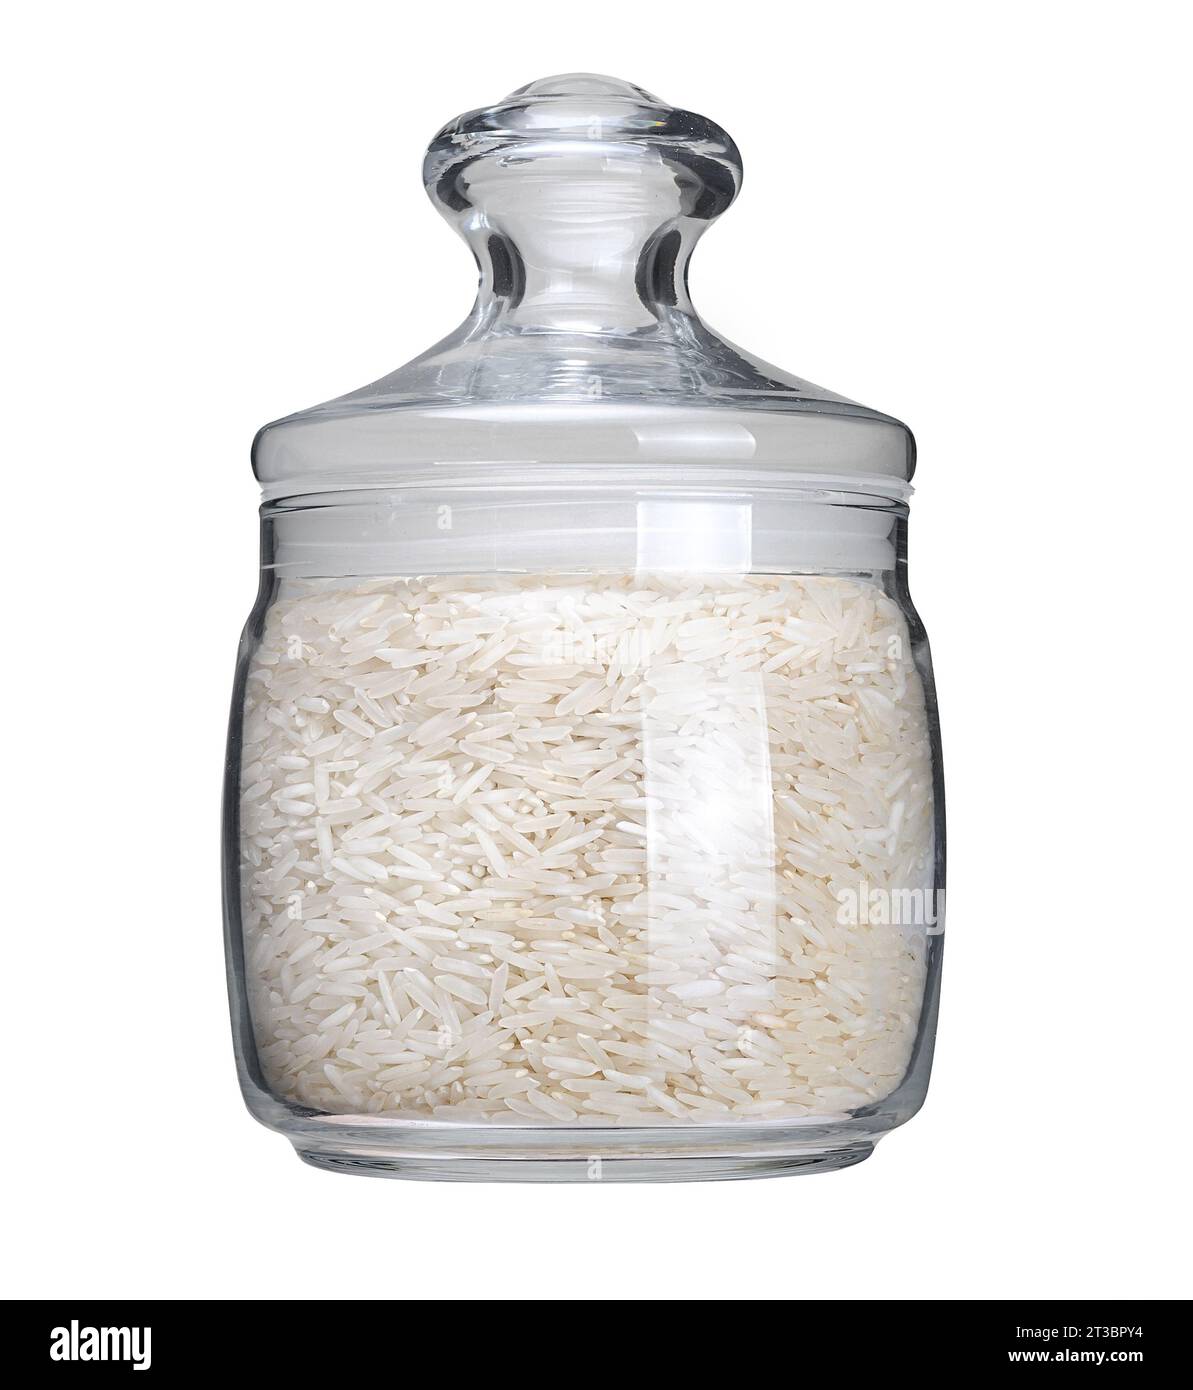 Basmati di riso lungo in vaso di vetro isolato su sfondo bianco. Riso secco e crudo Foto Stock